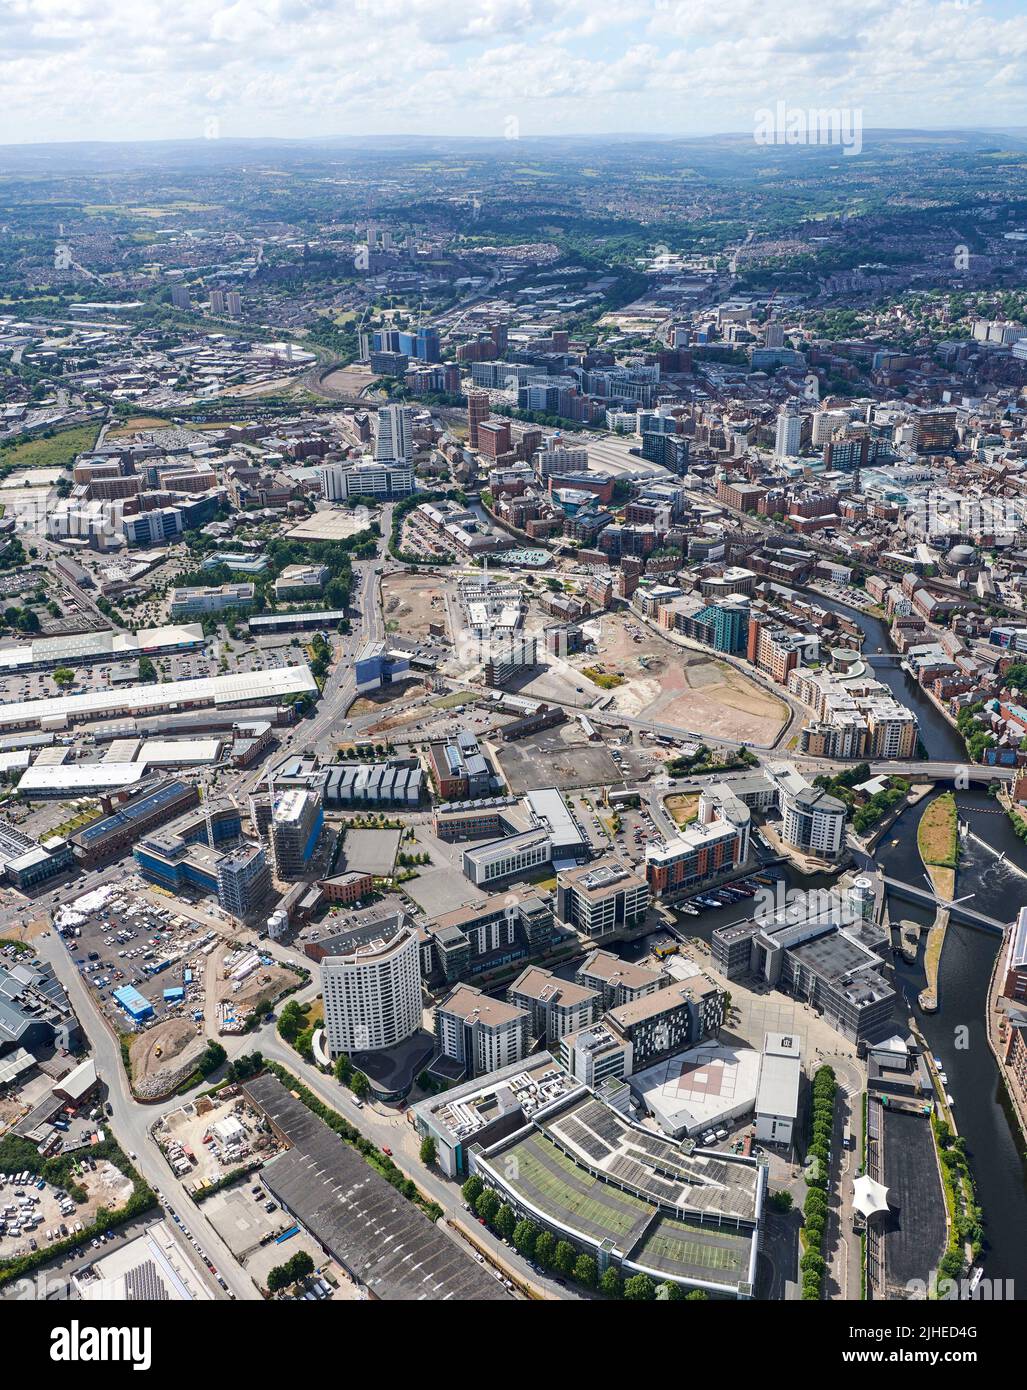 Una fotografia aerea del Leeds City Centre, West Yorkshire, Northern England, UK che mostra l'ex sito di sviluppo della Tetleys Brewery Foto Stock